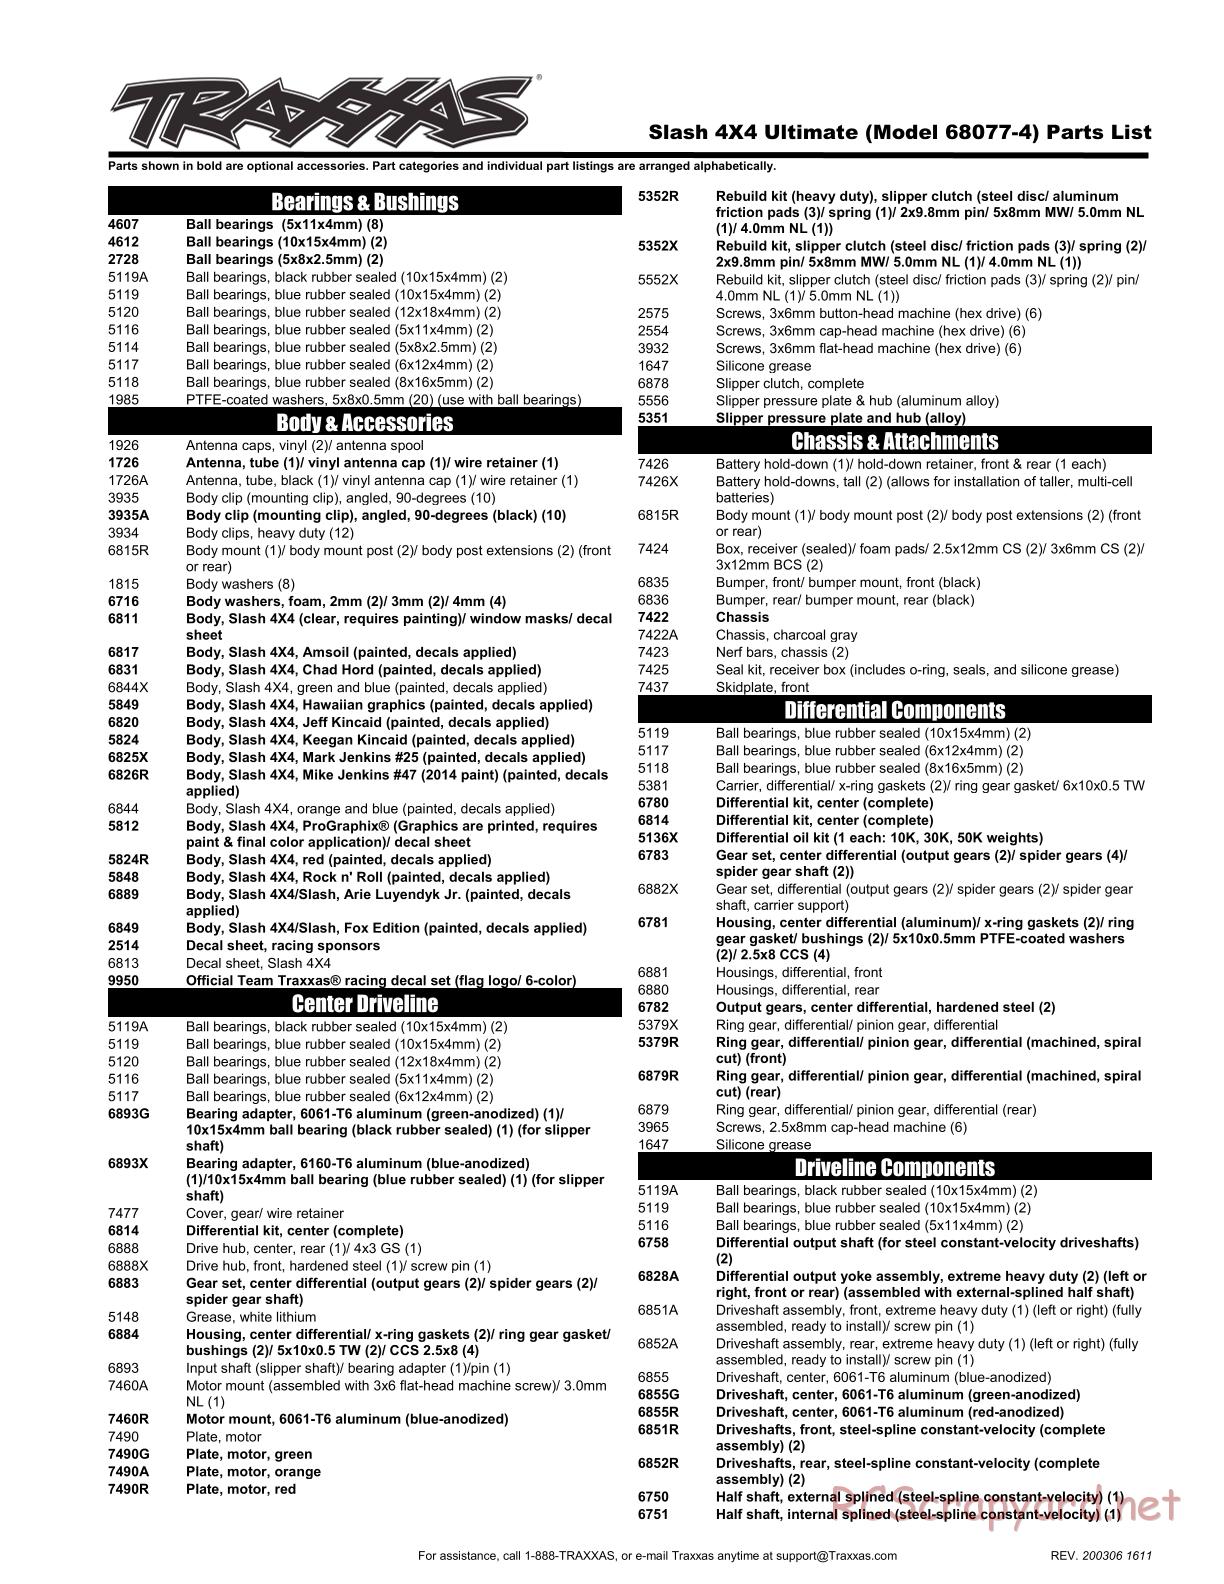 Traxxas - Slash 4x4 Ultimate TSM - Parts List - Page 1